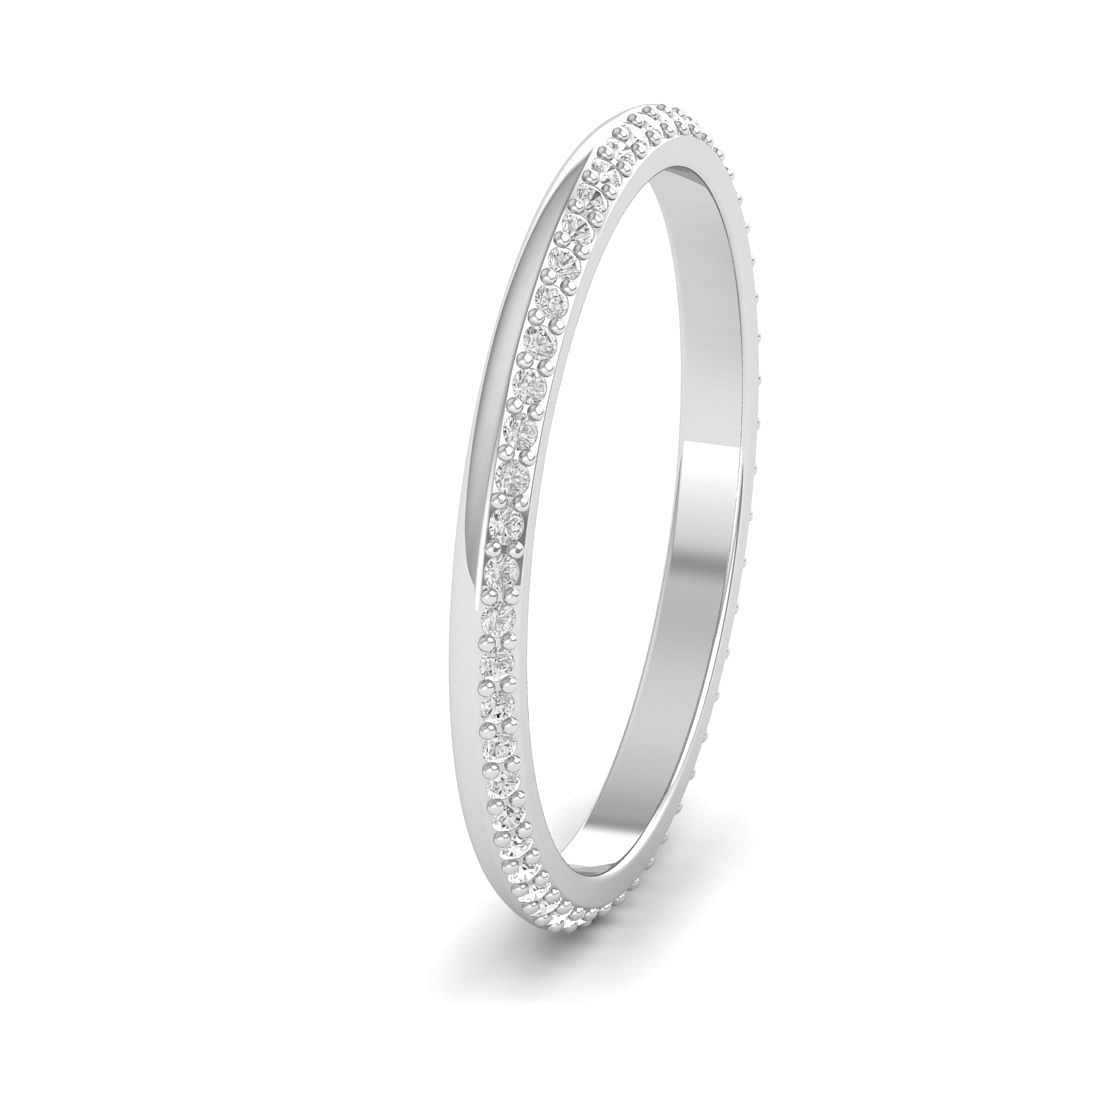 Dayita White Gold Diamond Ring For Women